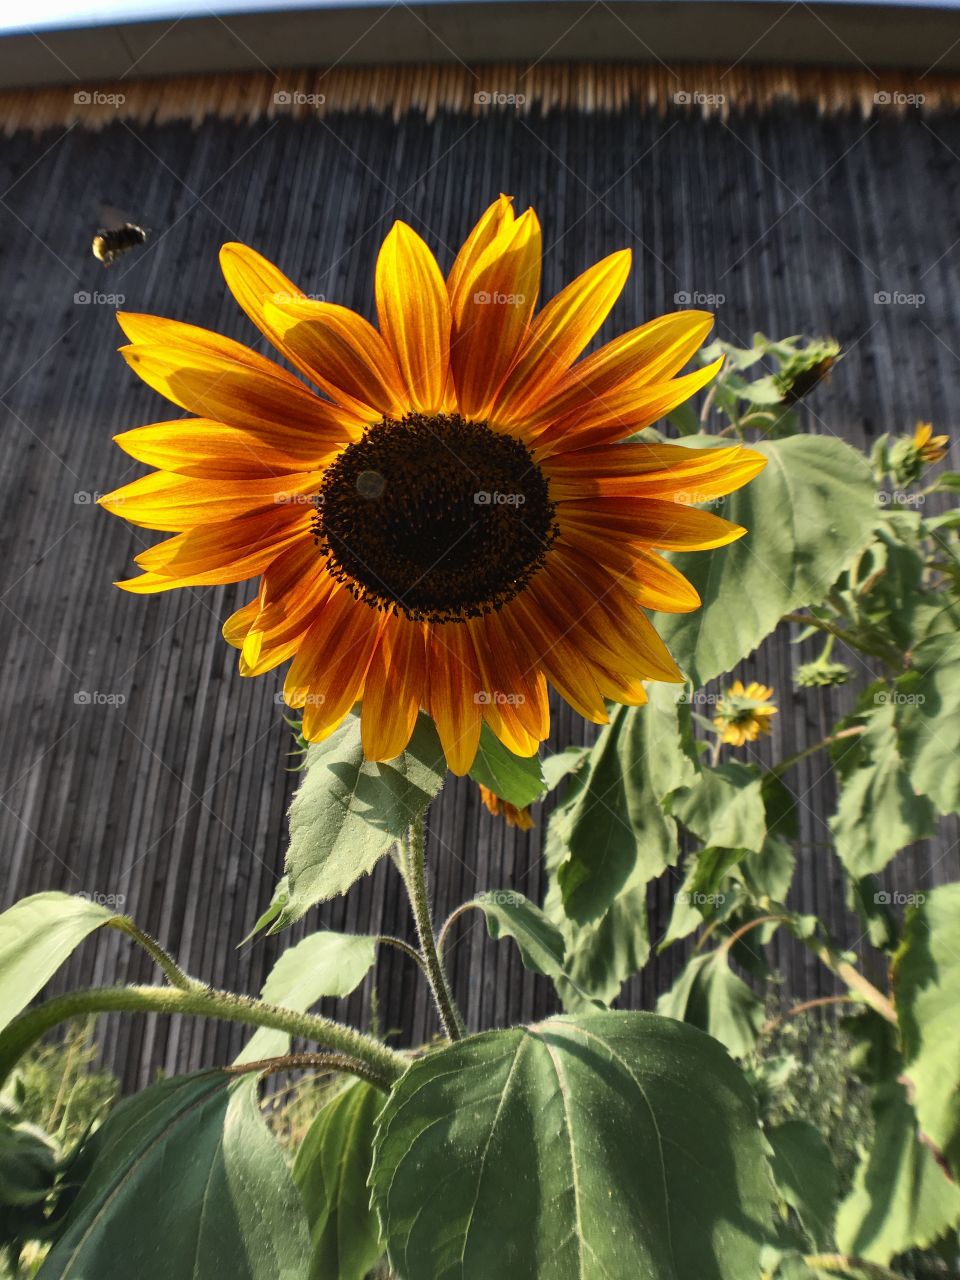 Sunflower & bee flying 